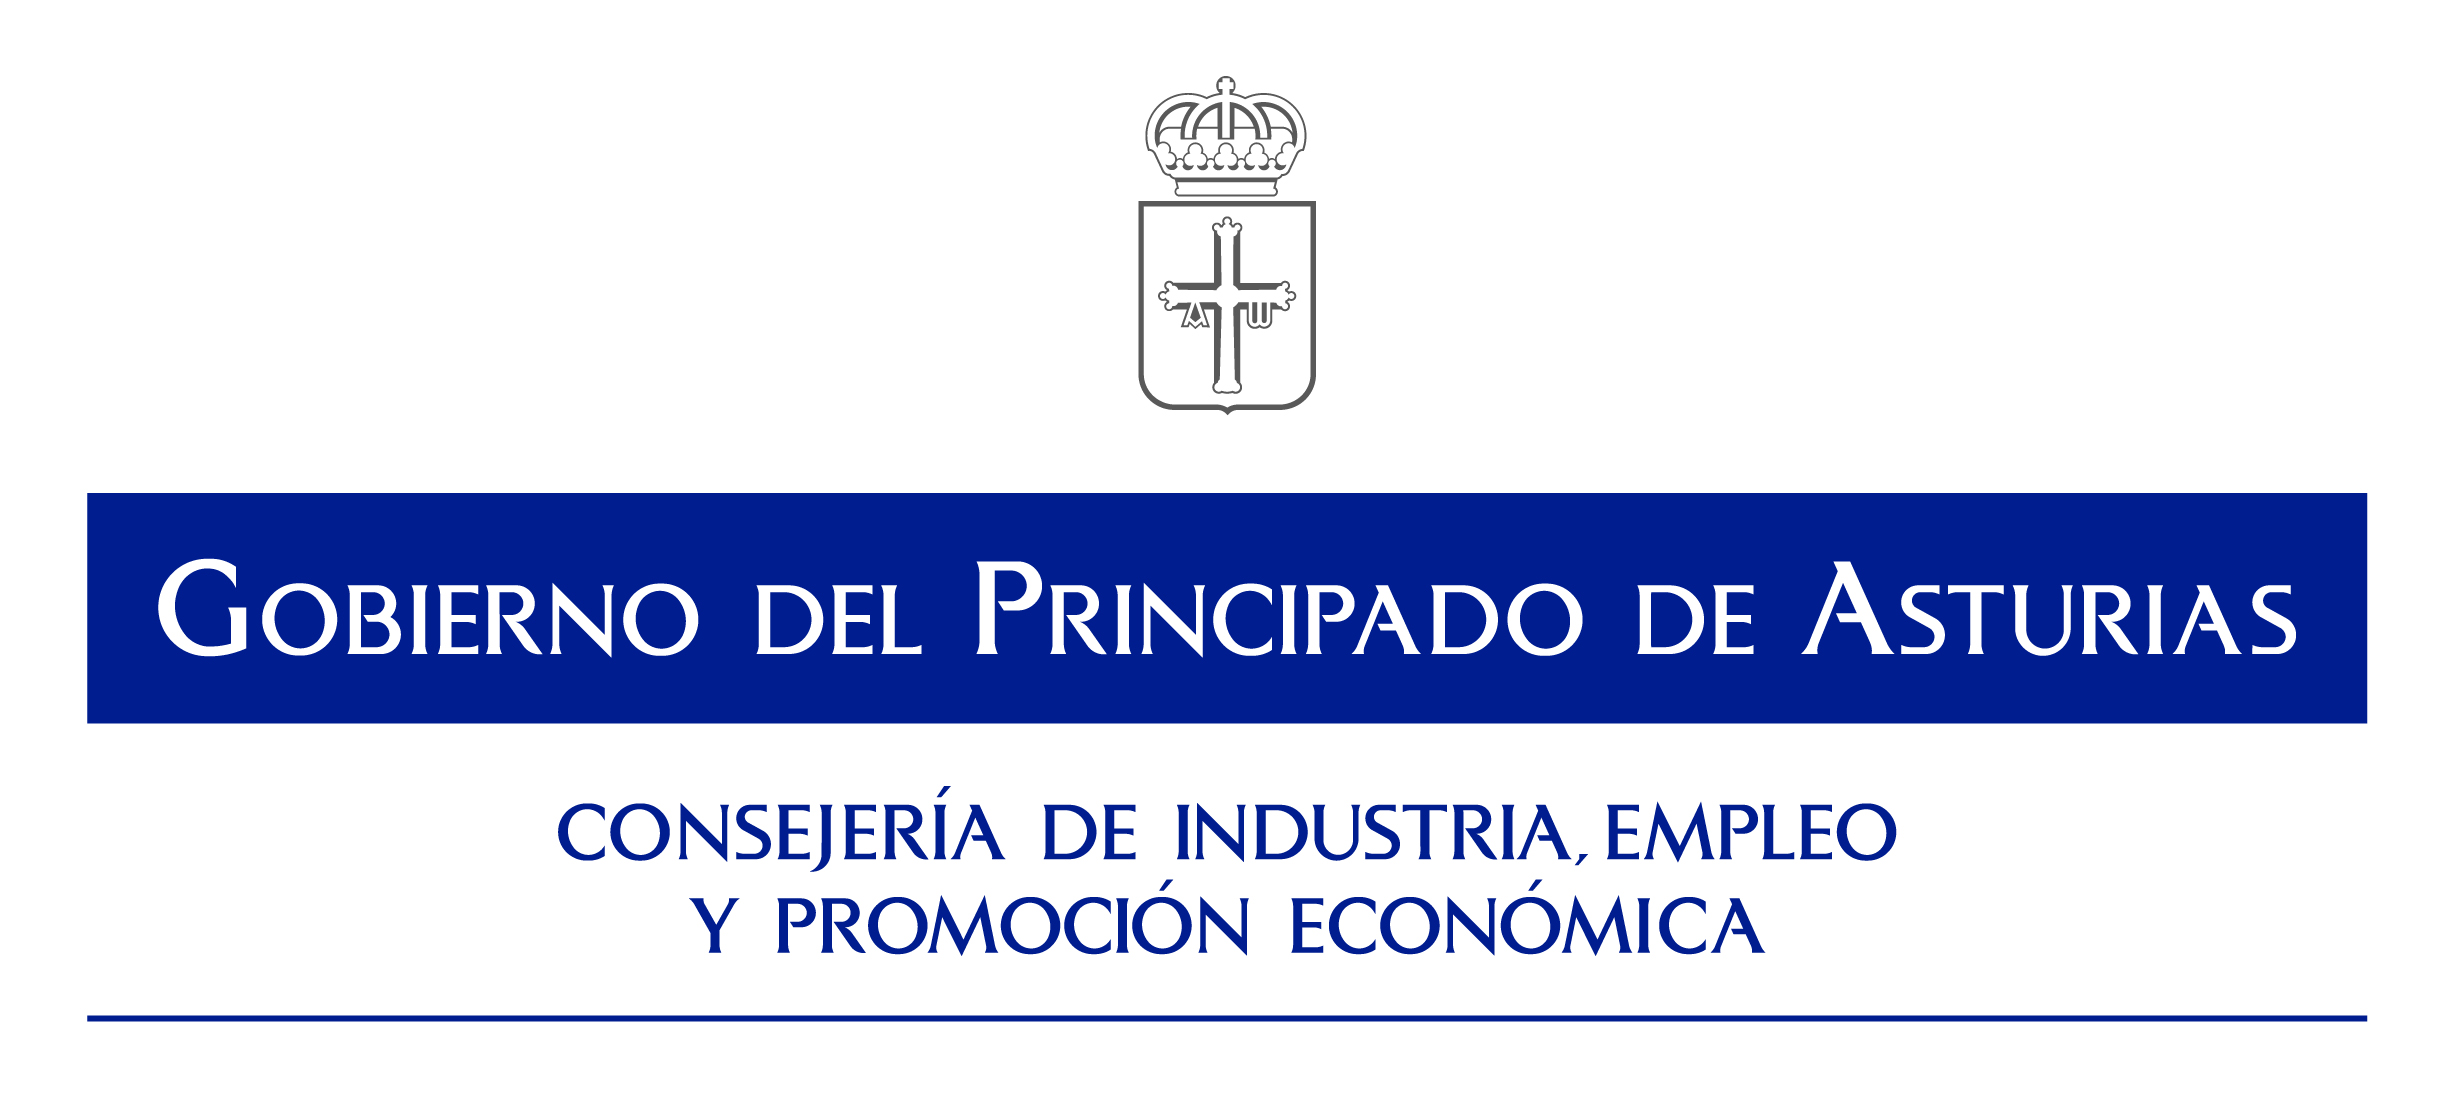 Consejería de Industria, Empleo y Promoción Económica del Principado de Asturias